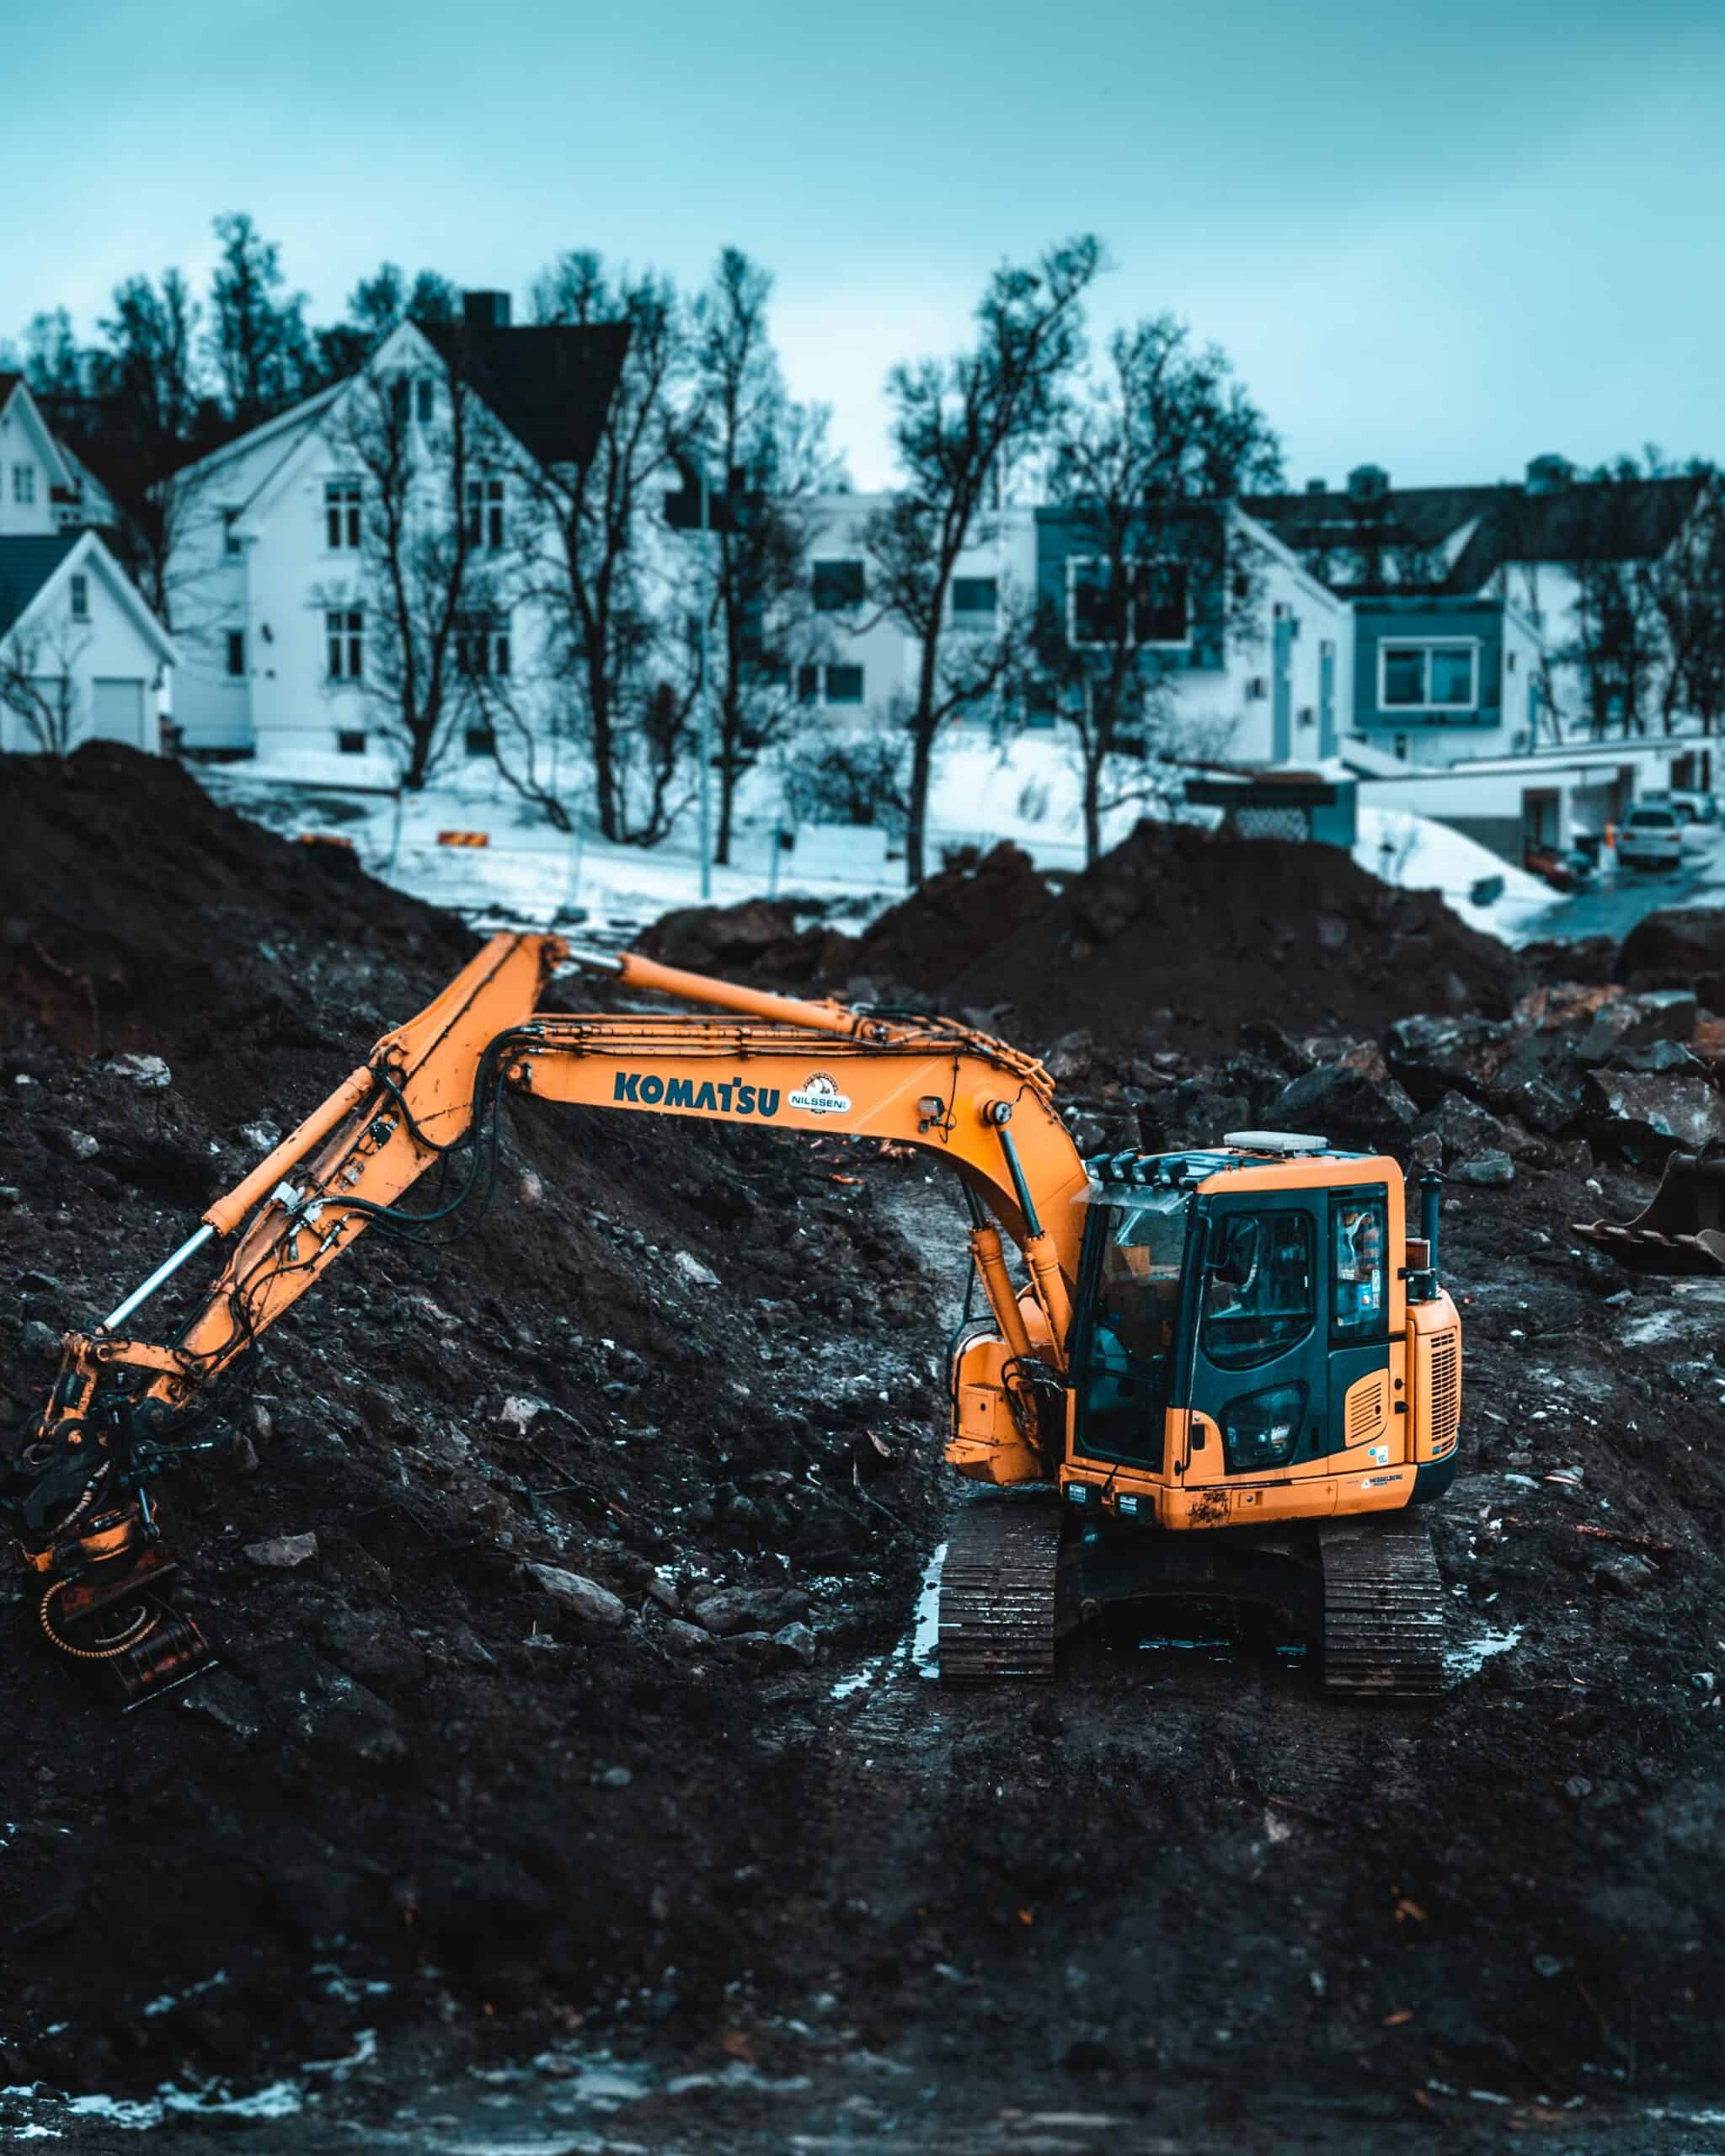 How to achieve maximum efficiency of mini excavator